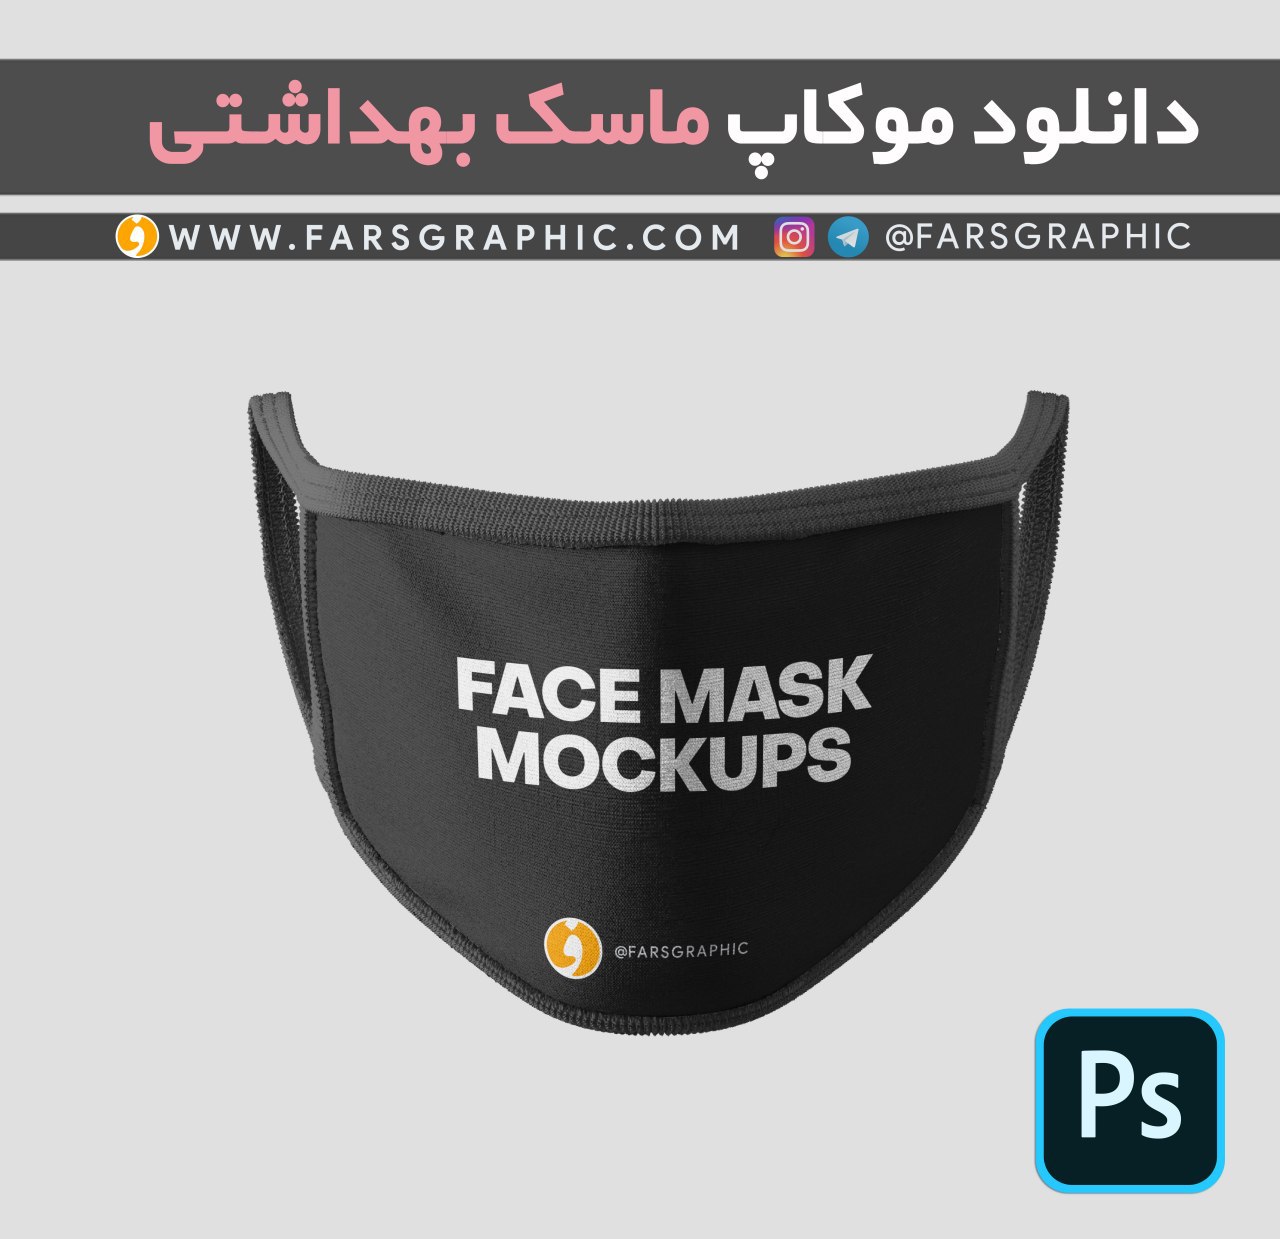 موکاپ ماسک بهداشتی با قابلیت تغییر رنگبندی